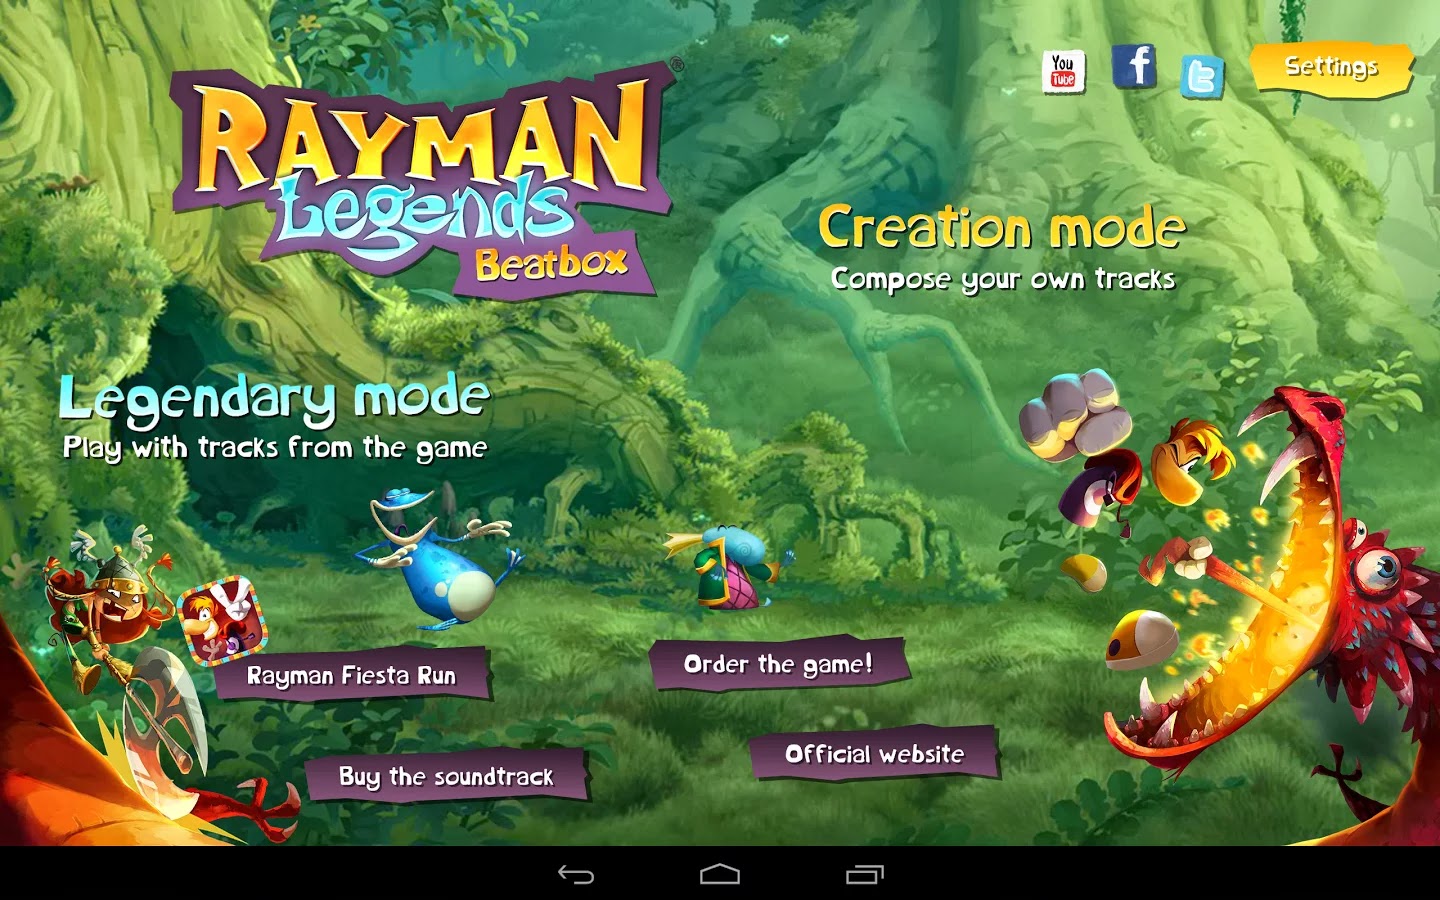 COPIA DE SEGURIDAD: Descargar Rayman® Legends Beatbox v1.0 